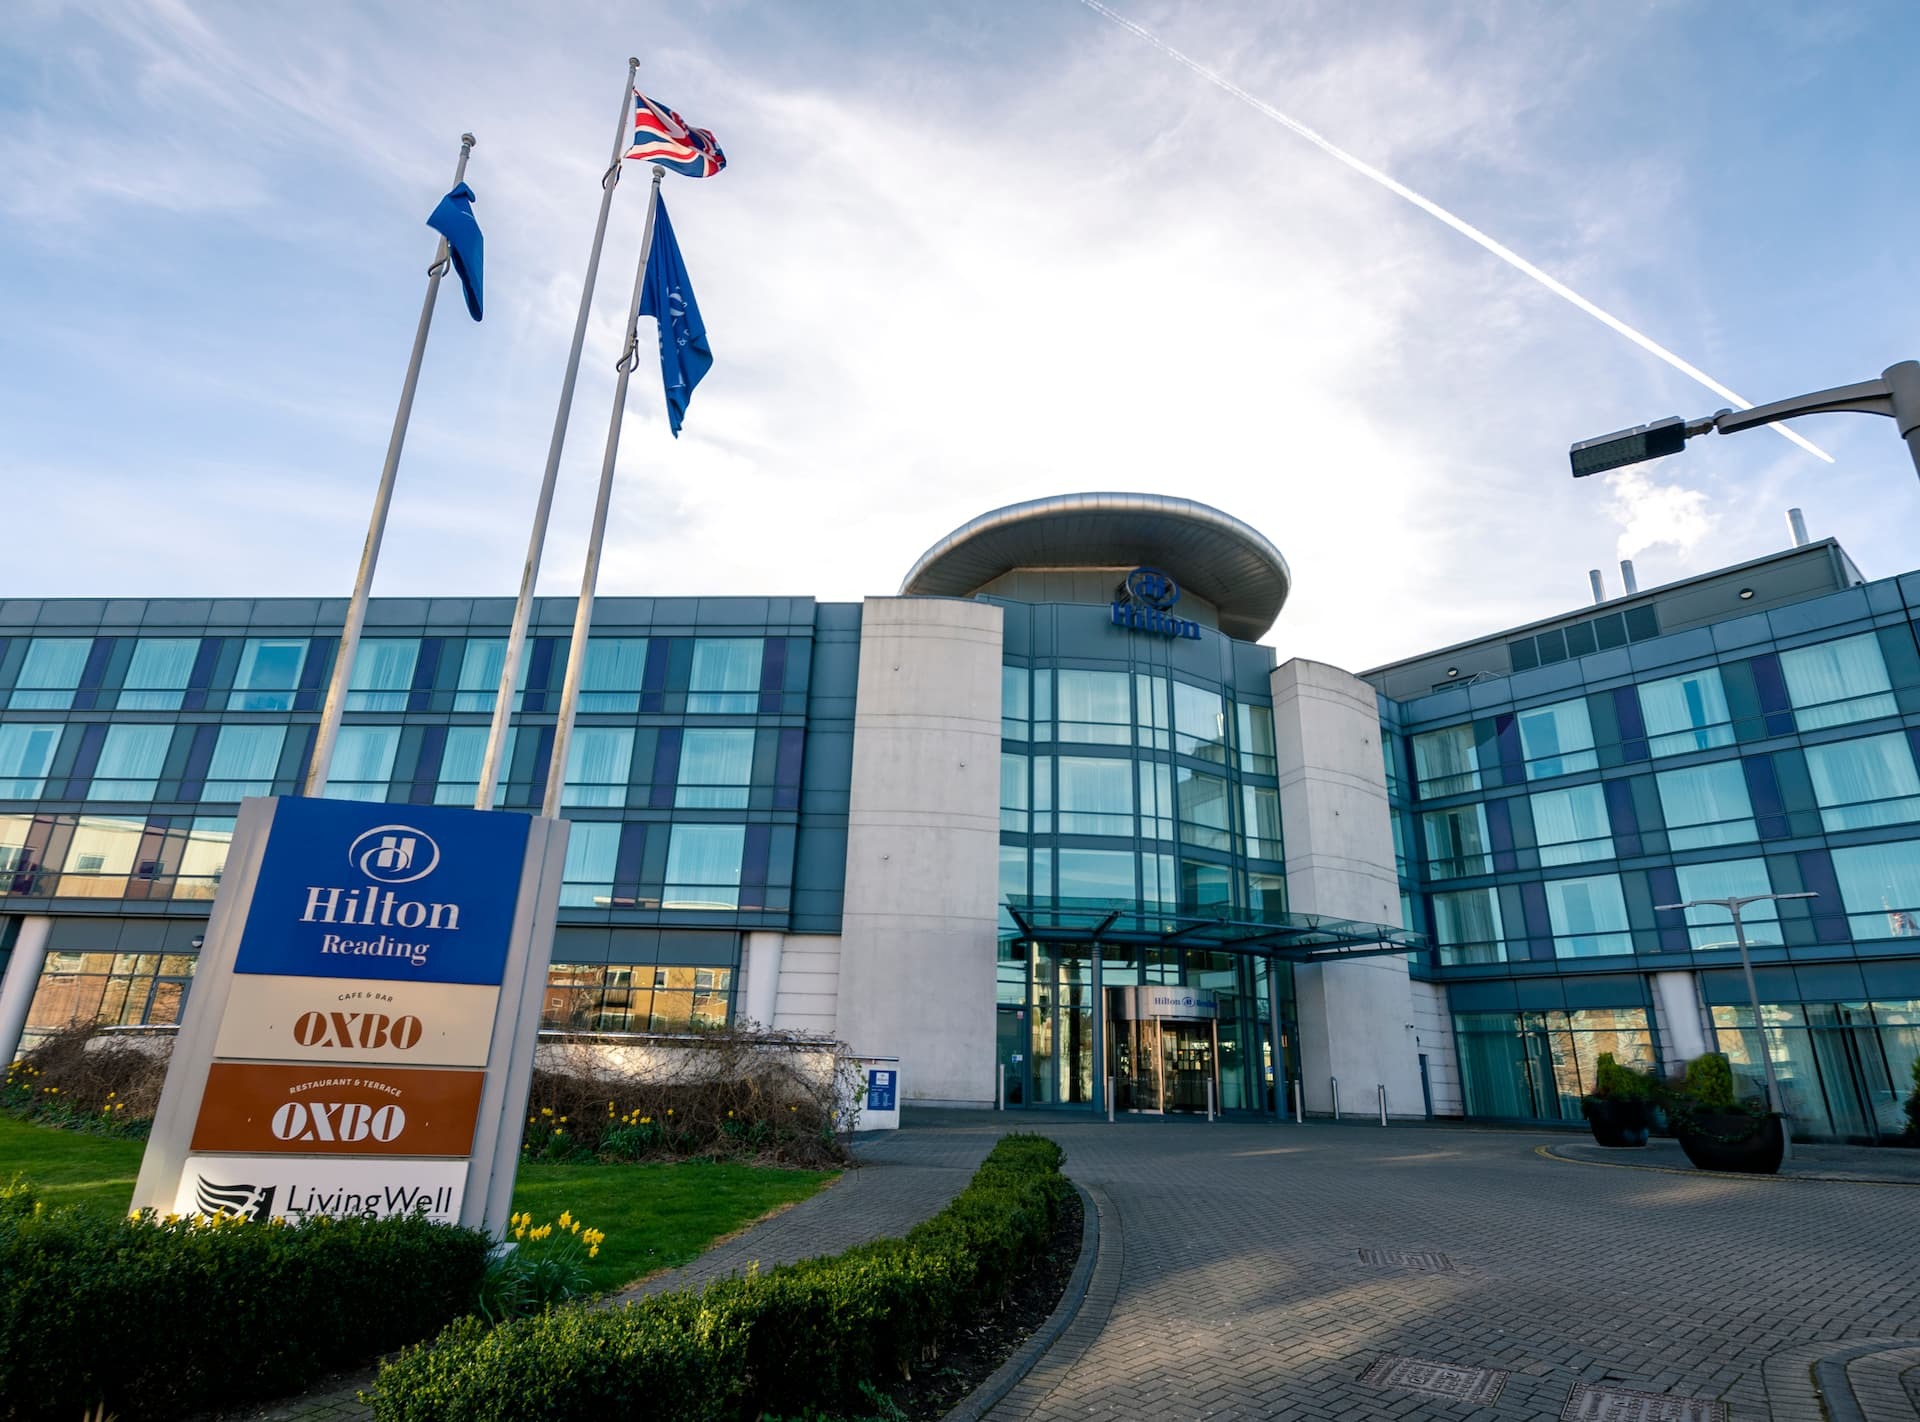 Photo of Hilton Reading, Reading, England, United Kingdom